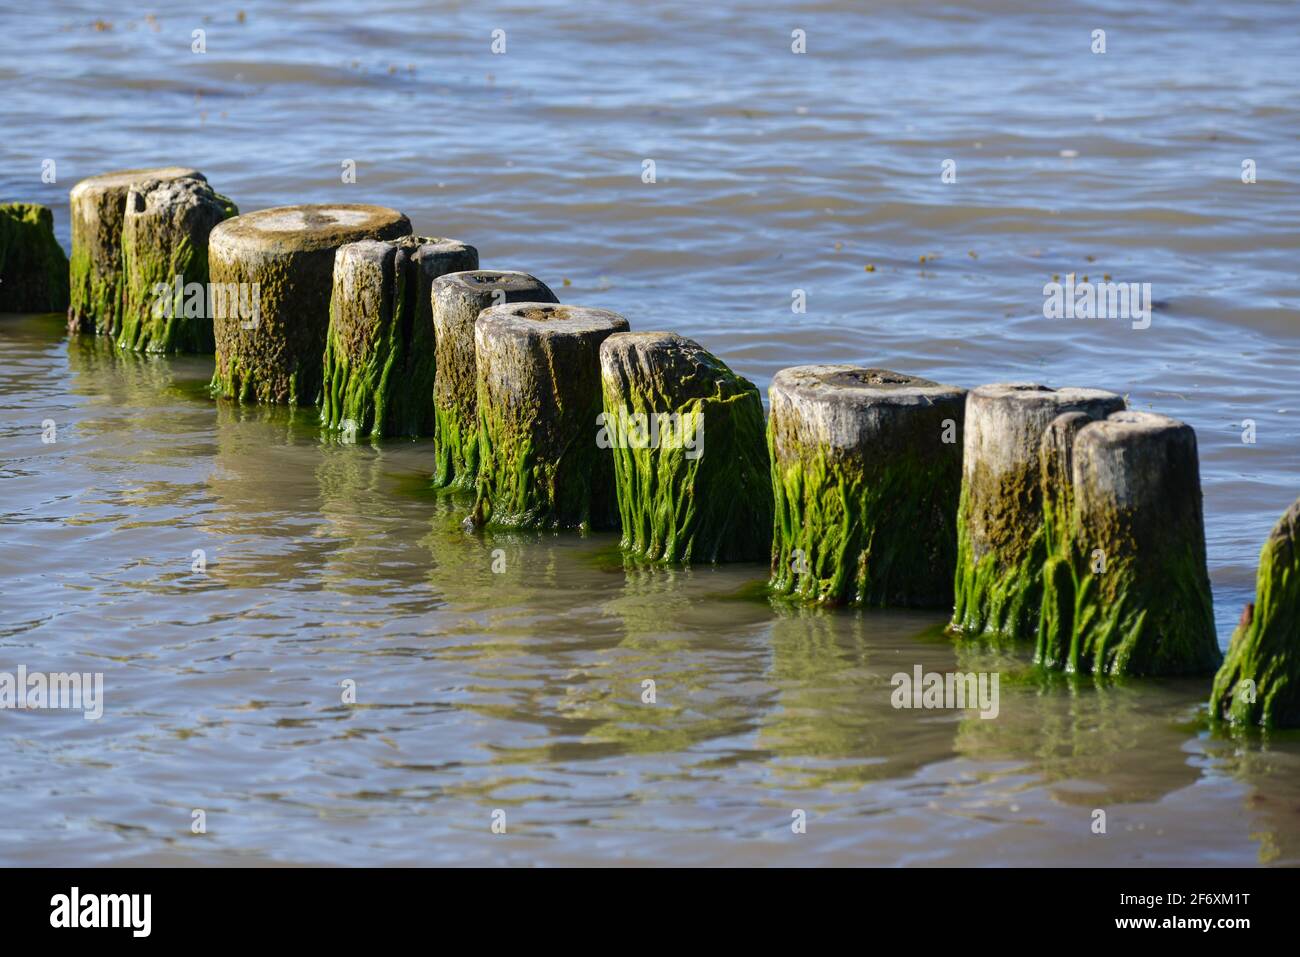 Mit Algen bewachsene Buhnen am Strand von Glowe in Rügen - a wooden spur dyke overgrown with algae at Glowe beach on Ruegen Island Stock Photo